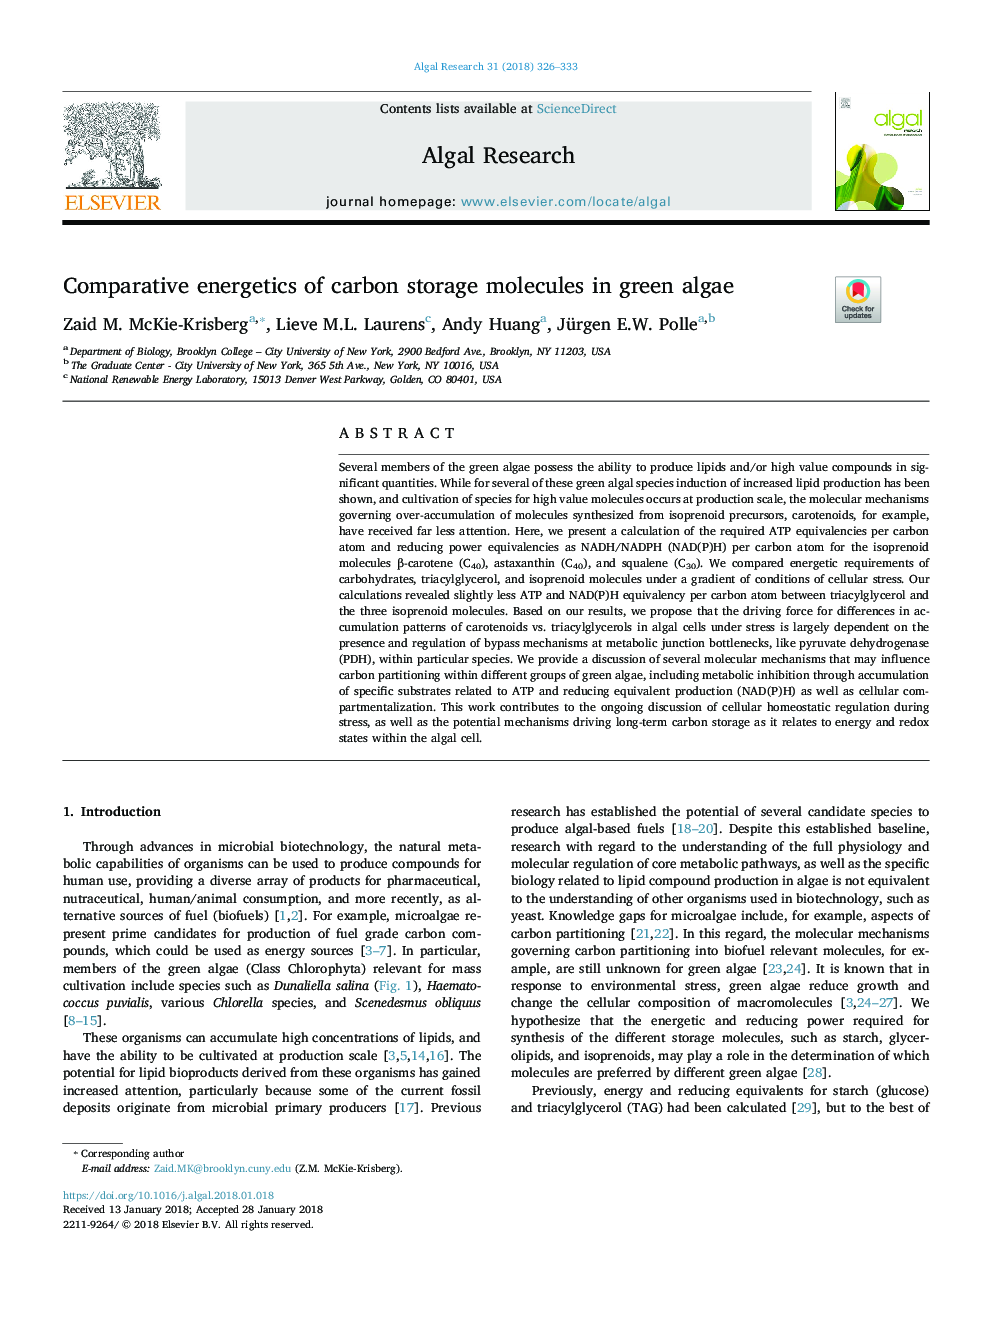 Comparative energetics of carbon storage molecules in green algae